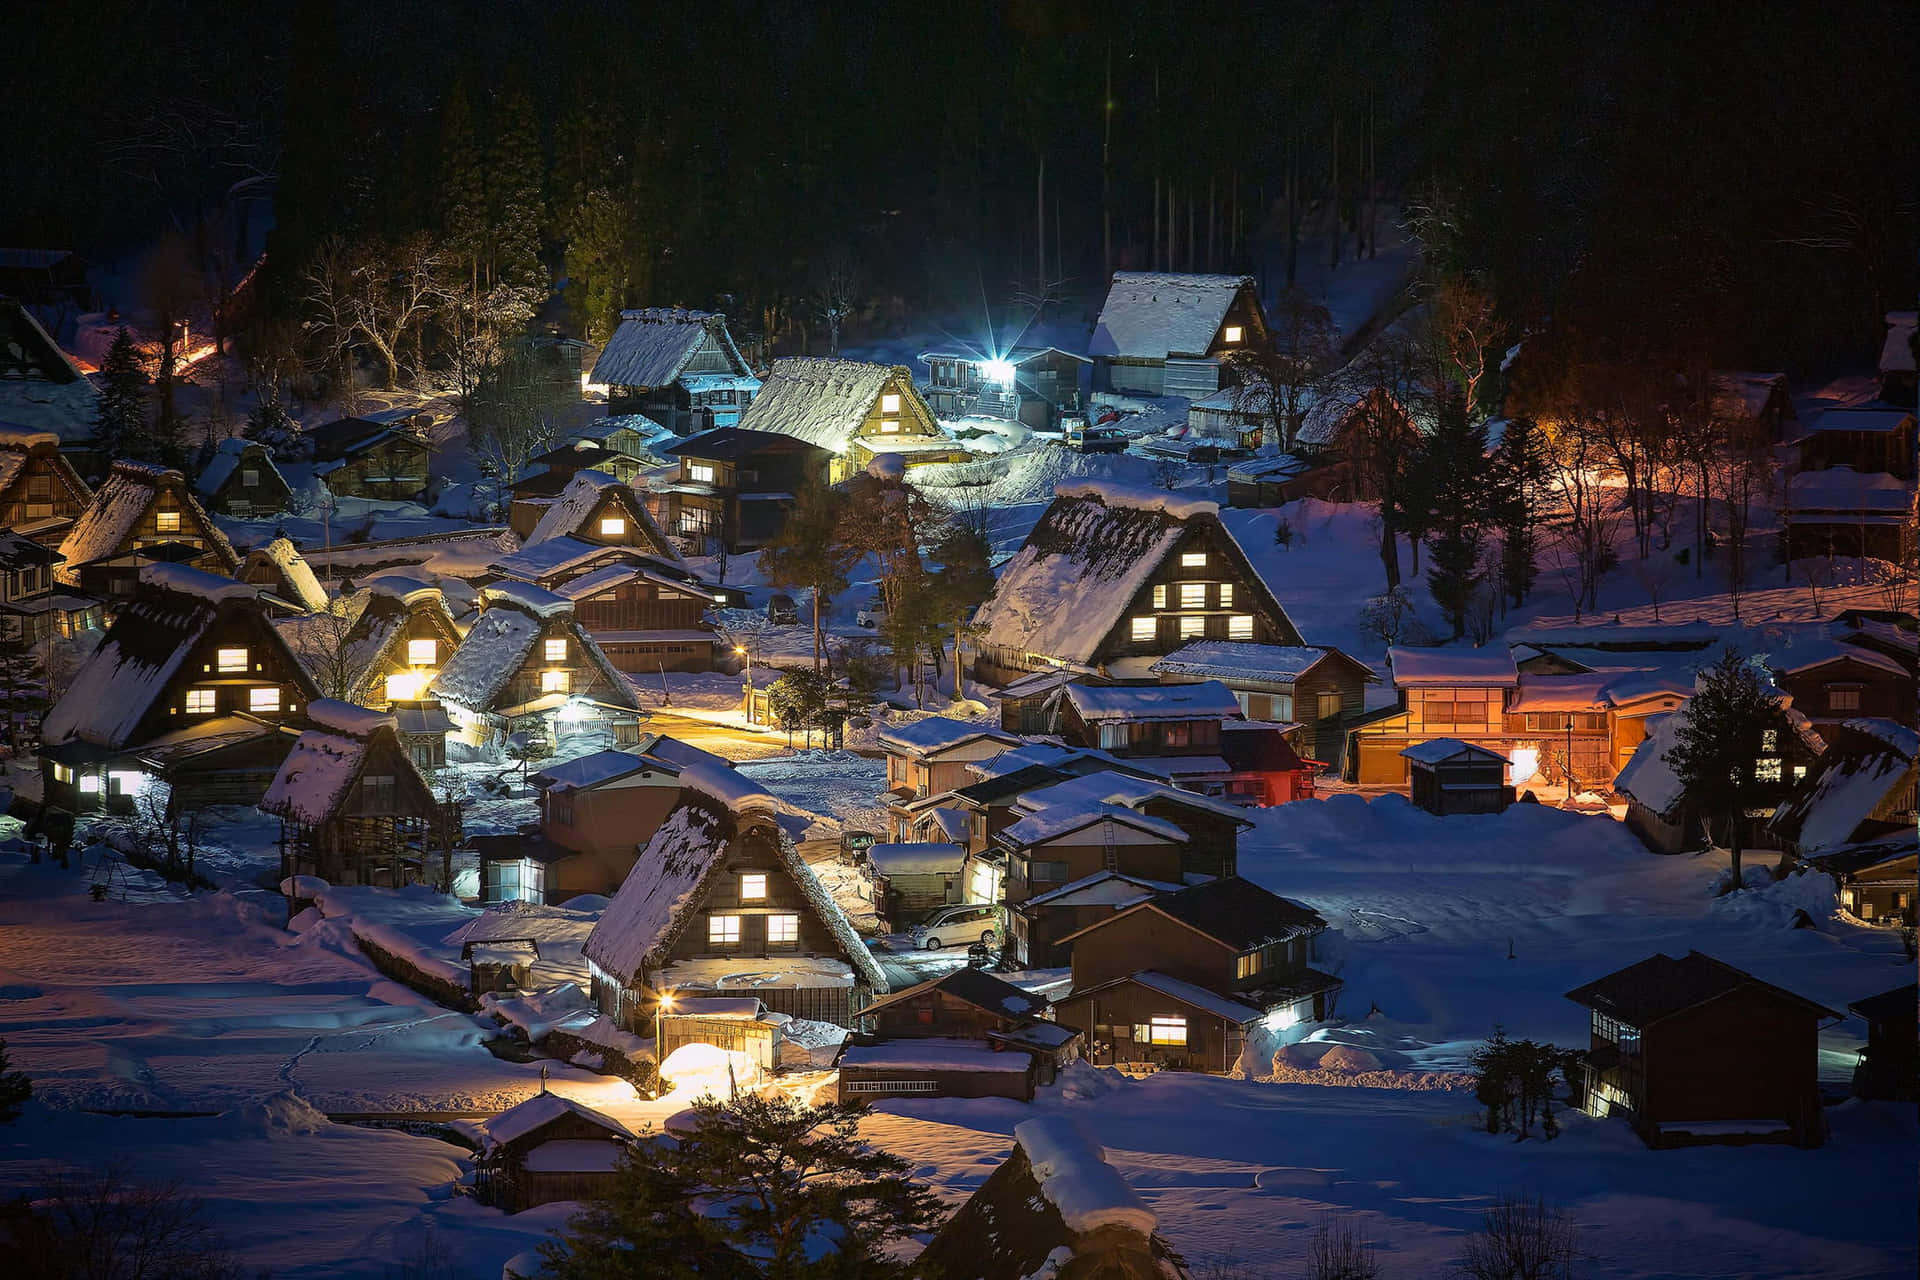 Snowy Village - Winter Wonderland Wallpaper